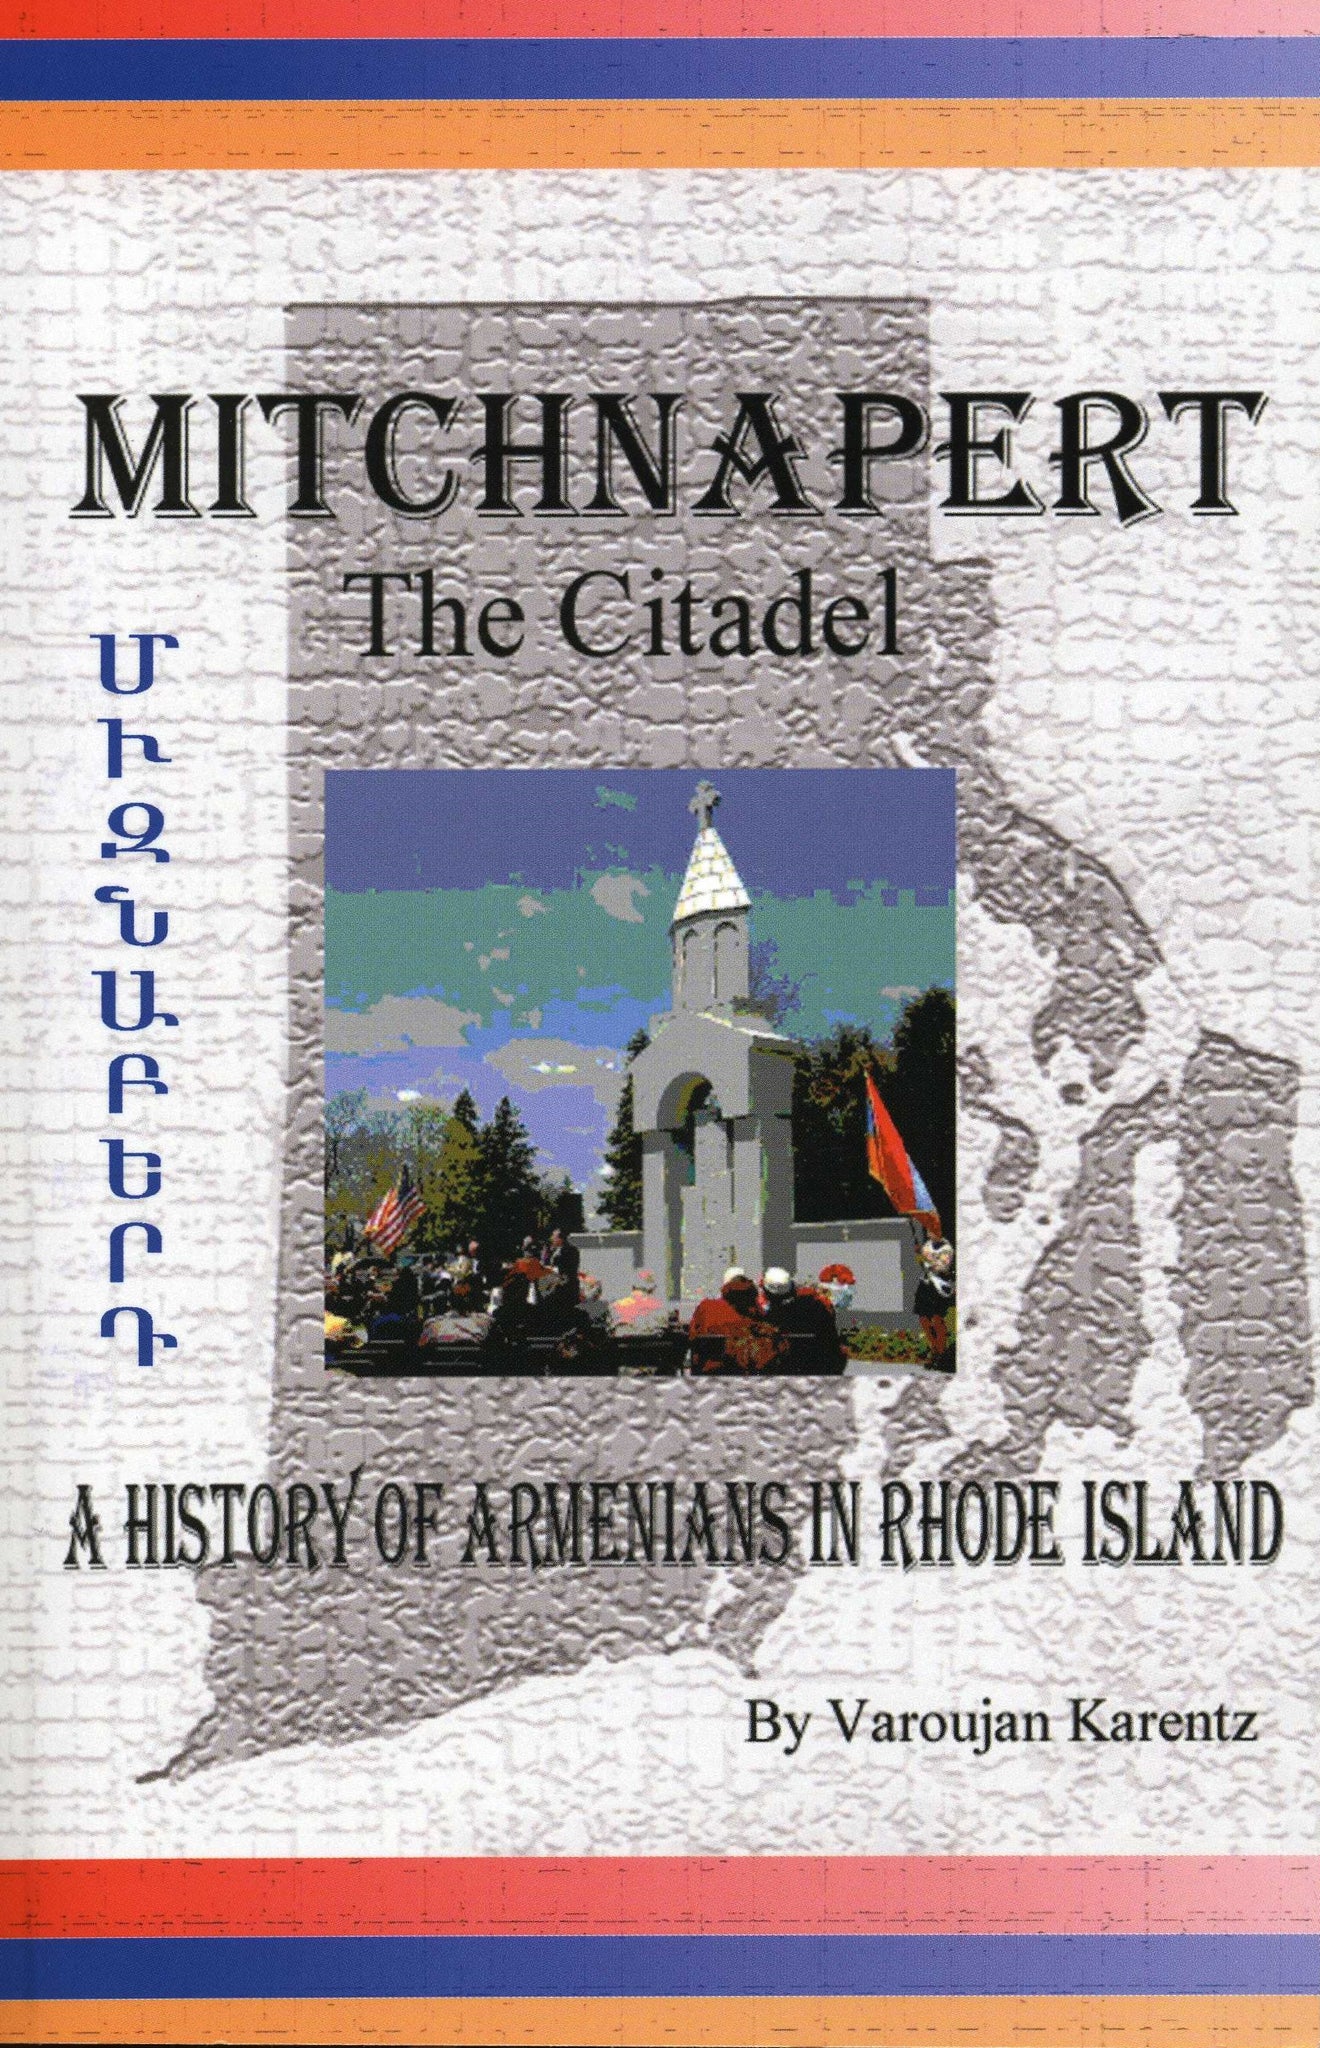 MITCHNAPERT (The Citadel): A History of Armenians in Rhode Island